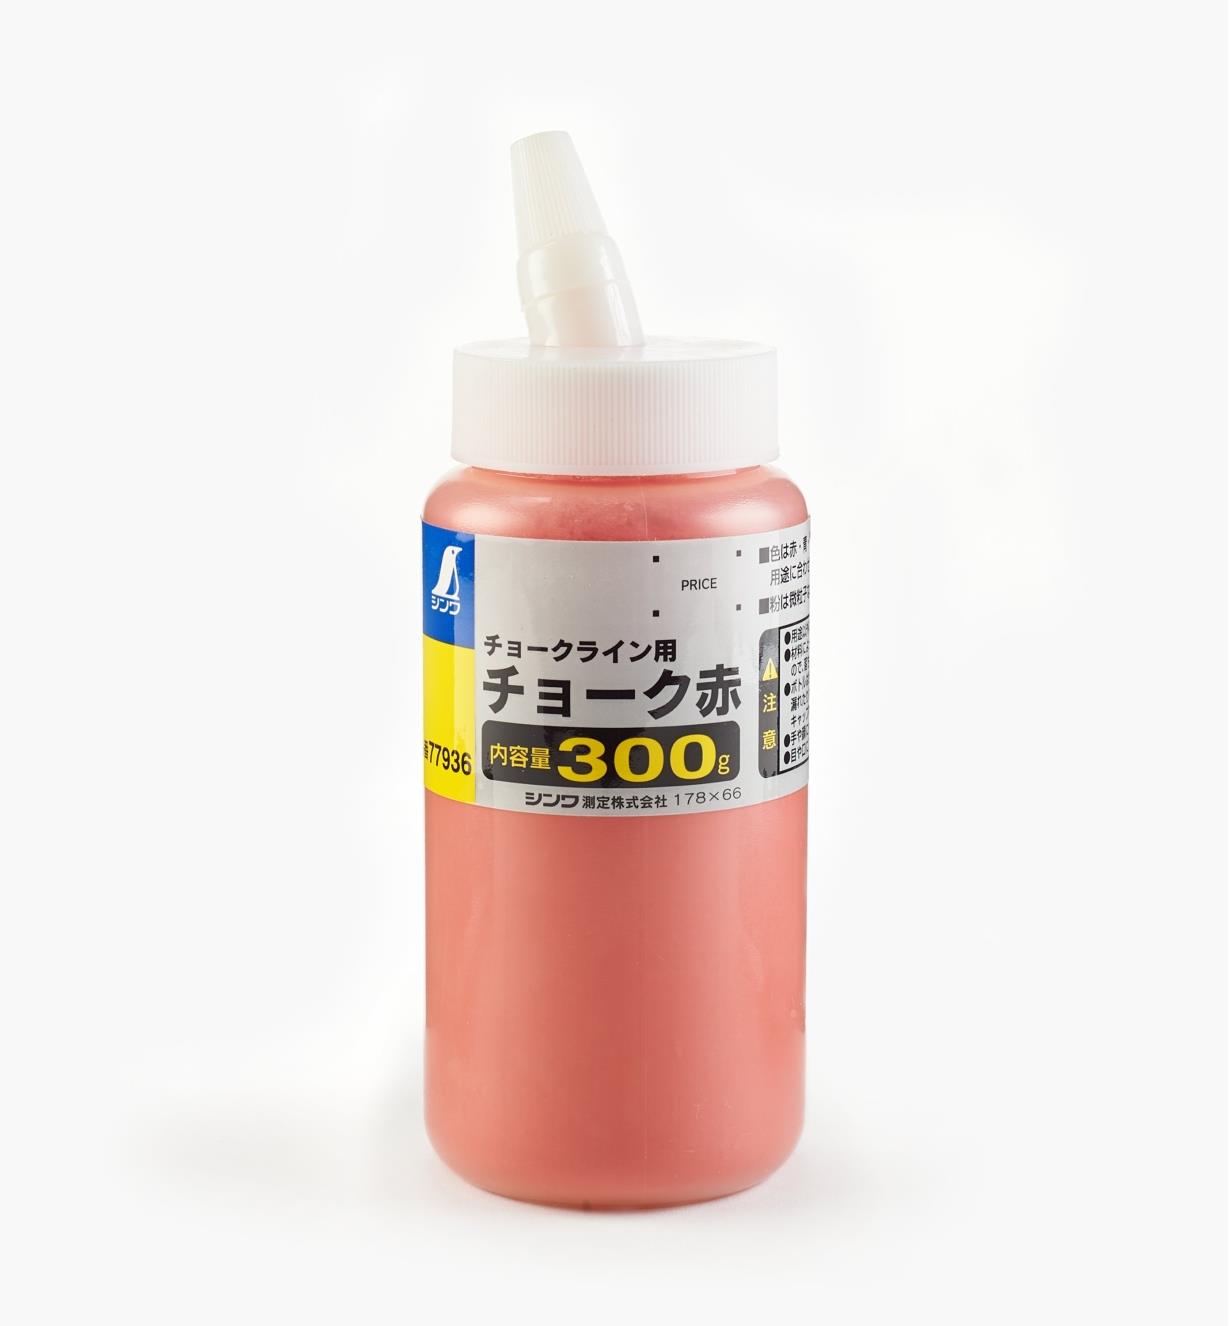 83U0254 - 300g Red Chalk Powder